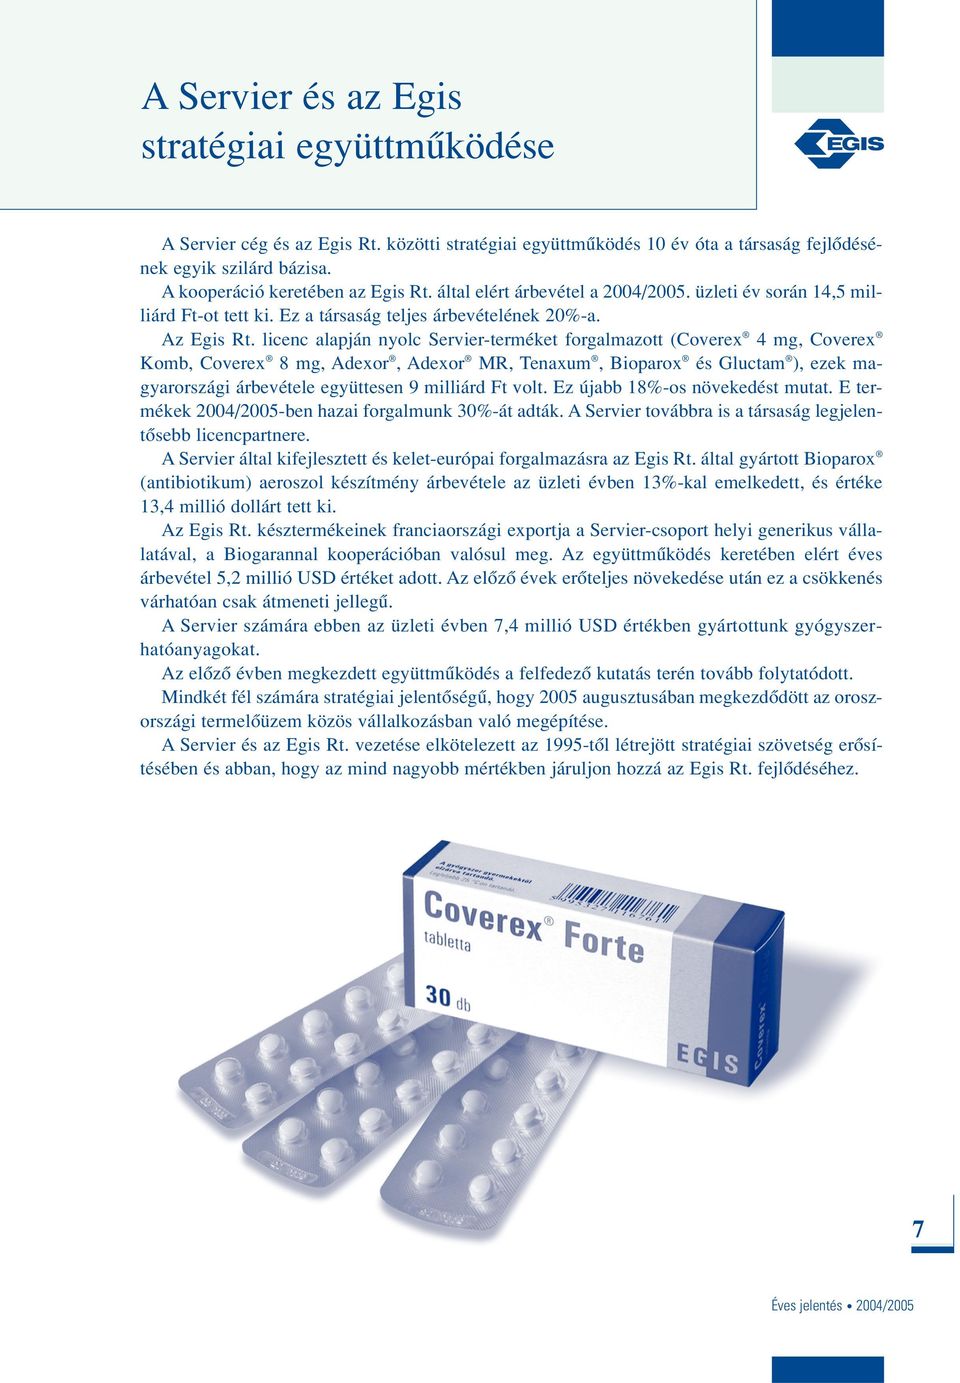 licenc alapján nyolc Servier-terméket forgalmazott (Coverex 4 mg, Coverex Komb, Coverex 8 mg, Adexor, Adexor MR, Tenaxum, Bioparox és Gluctam ), ezek magyarországi árbevétele együttesen 9 milliárd Ft